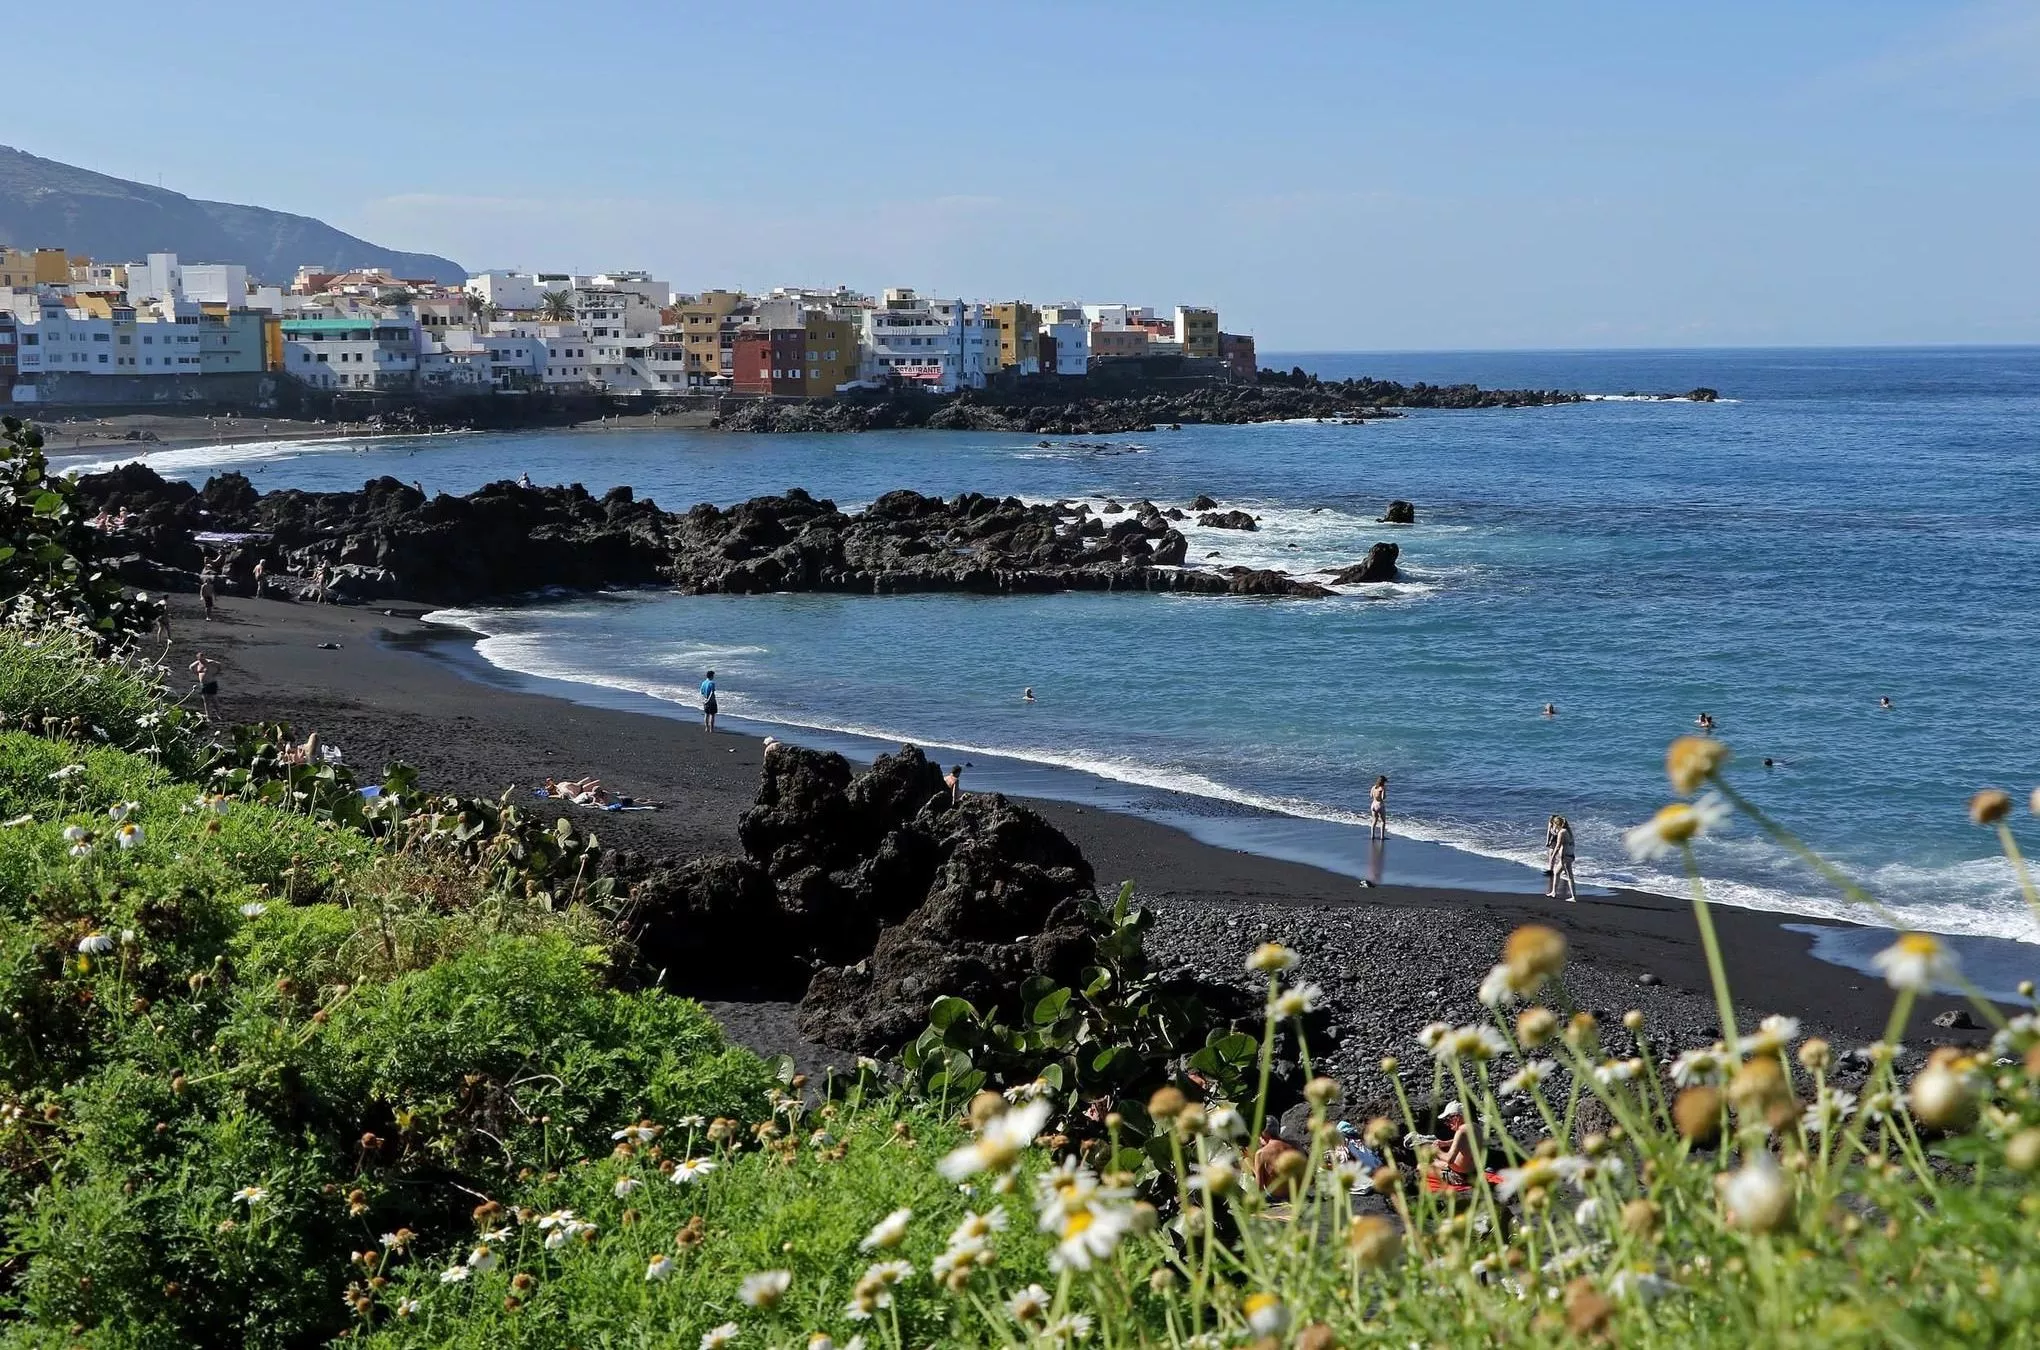 Dunkler Vulkansand, kleine Felsen und tropische Pflanzen: Der Playa Jardín in Puerto de la Cruz zählt zu den schönsten Stränden auf Teneriffa